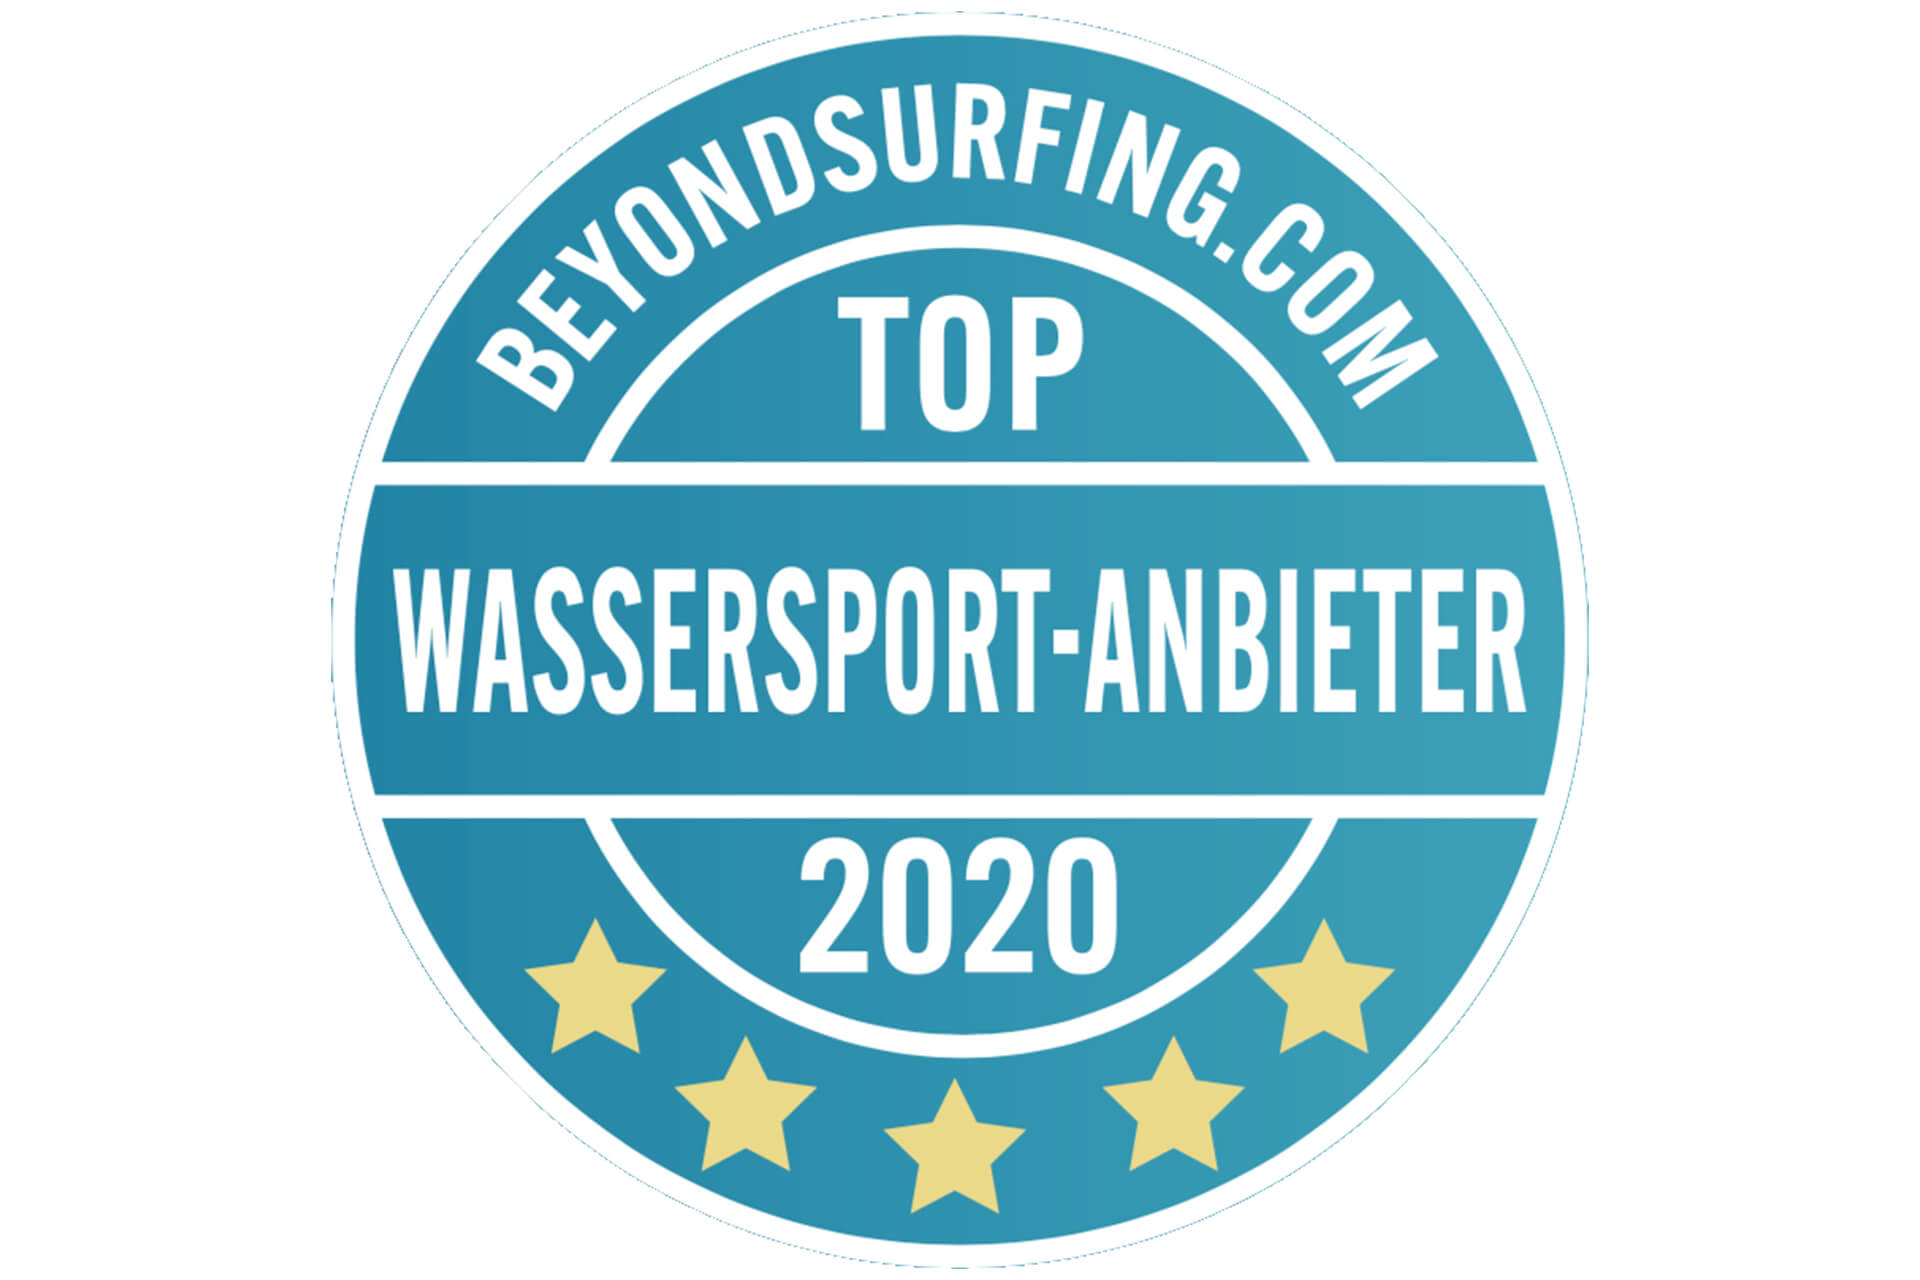 Weissenhäuser Strand Wassersport-Award beyondsurfing Wakeboard und Wasserski